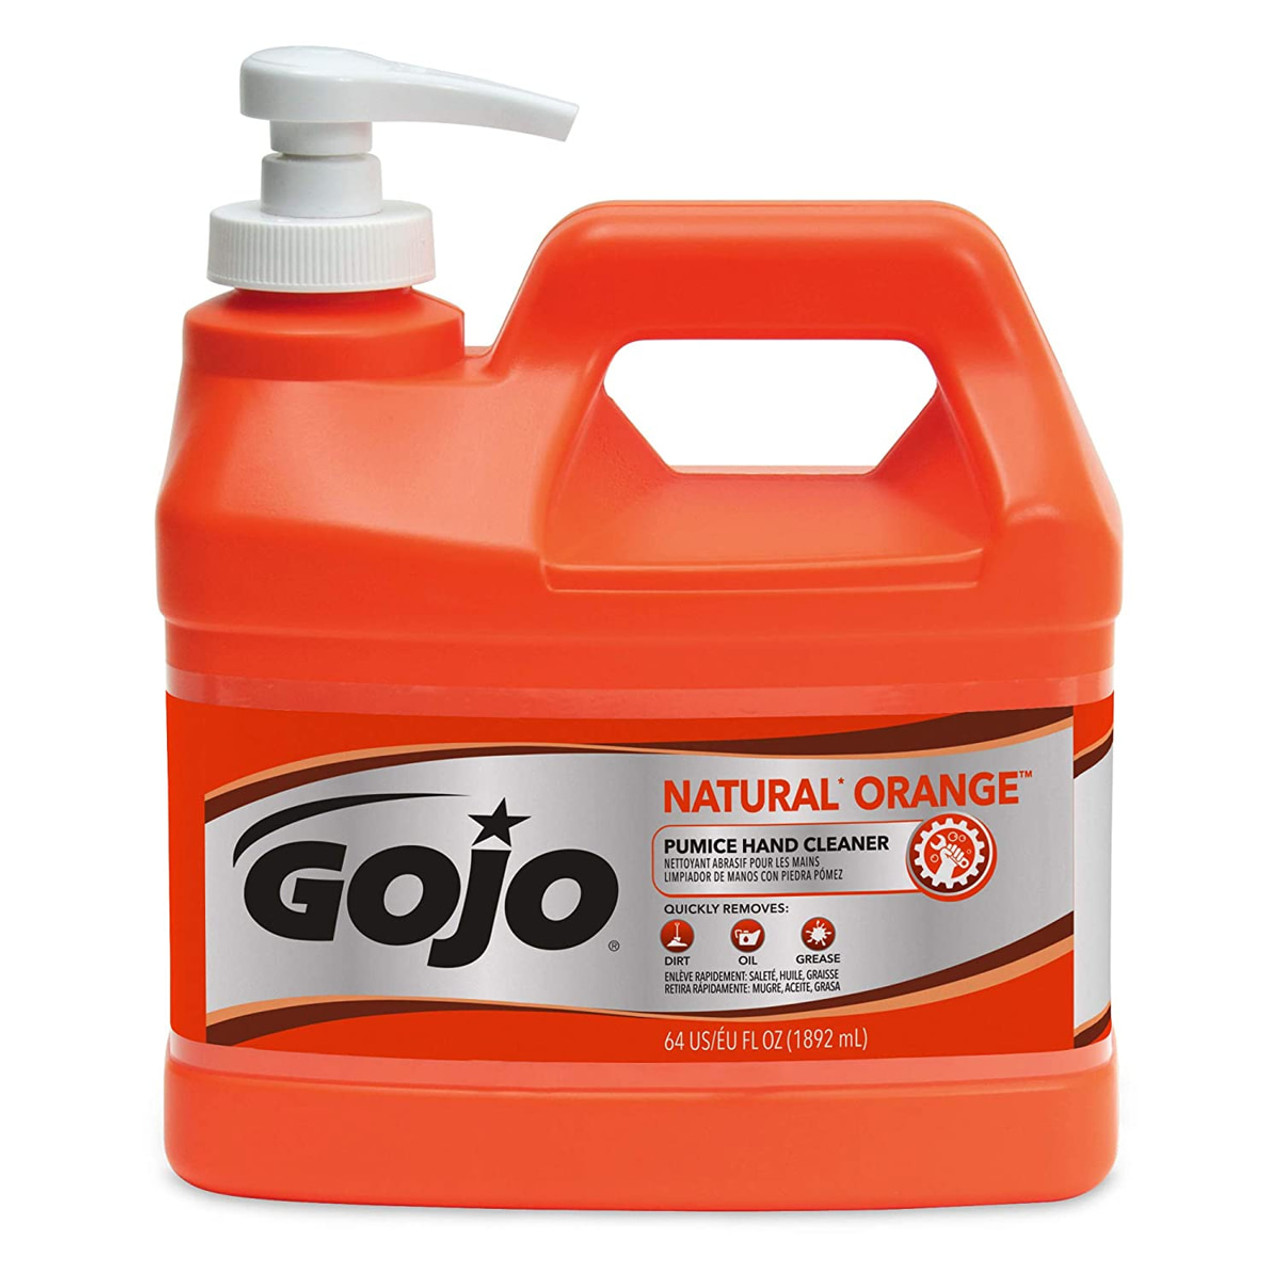 Gojo Natural Orange Pumice Hand Cleaner, Orange Citrus Scent - 0.5 gal jug